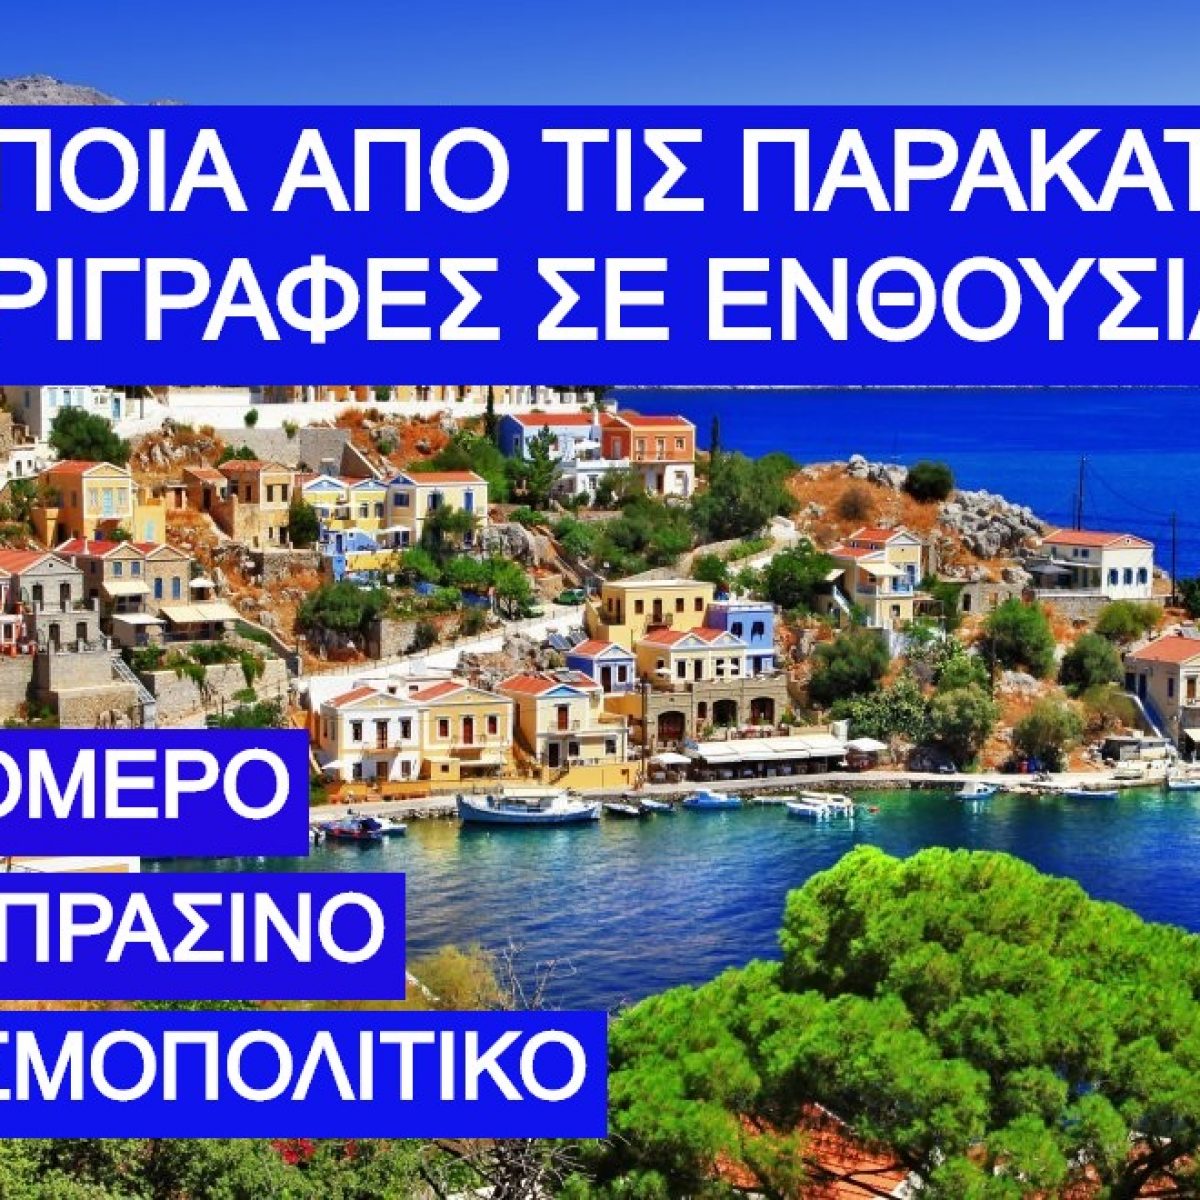 ΤΕΣΤ Διακοπών: Σε ποιο ελληνικό νησί πρέπει να κάνεις φέτος διακοπές;